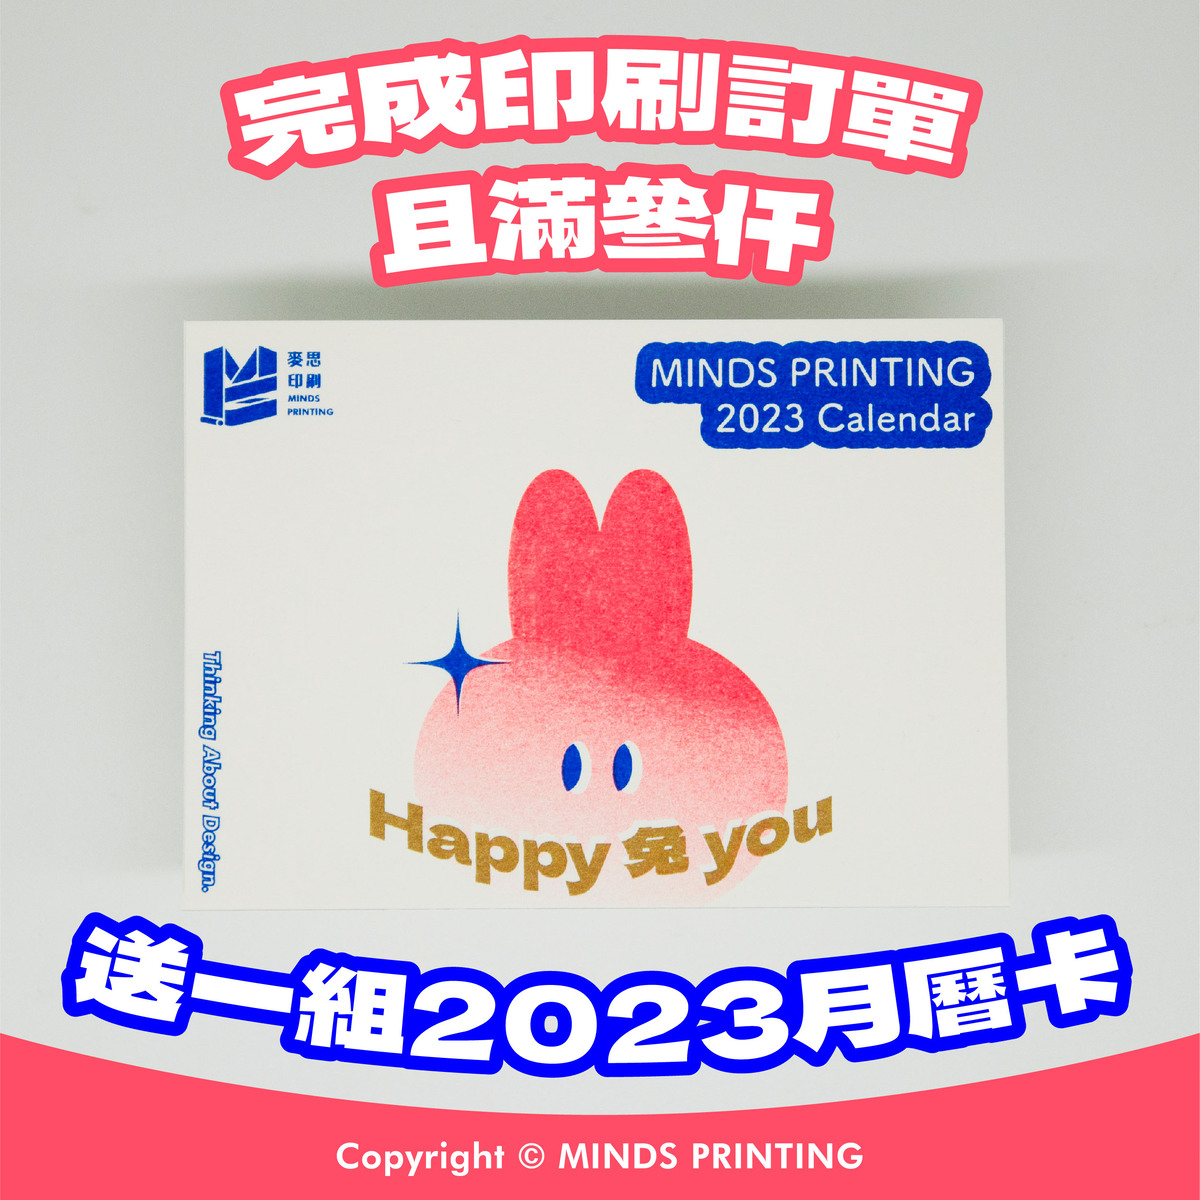 【滿額贈送】Happy 兔 you | 2023 Calendar－完成印刷訂單且滿參仟